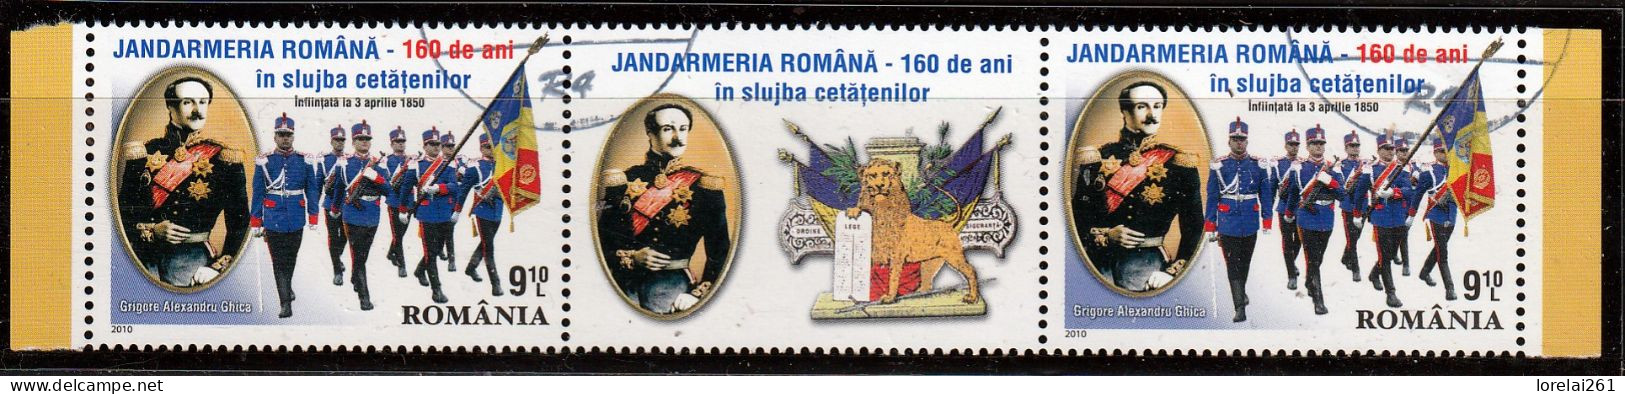 2010 - Gendarmerie Roumaine Mi No  6425 - Usado